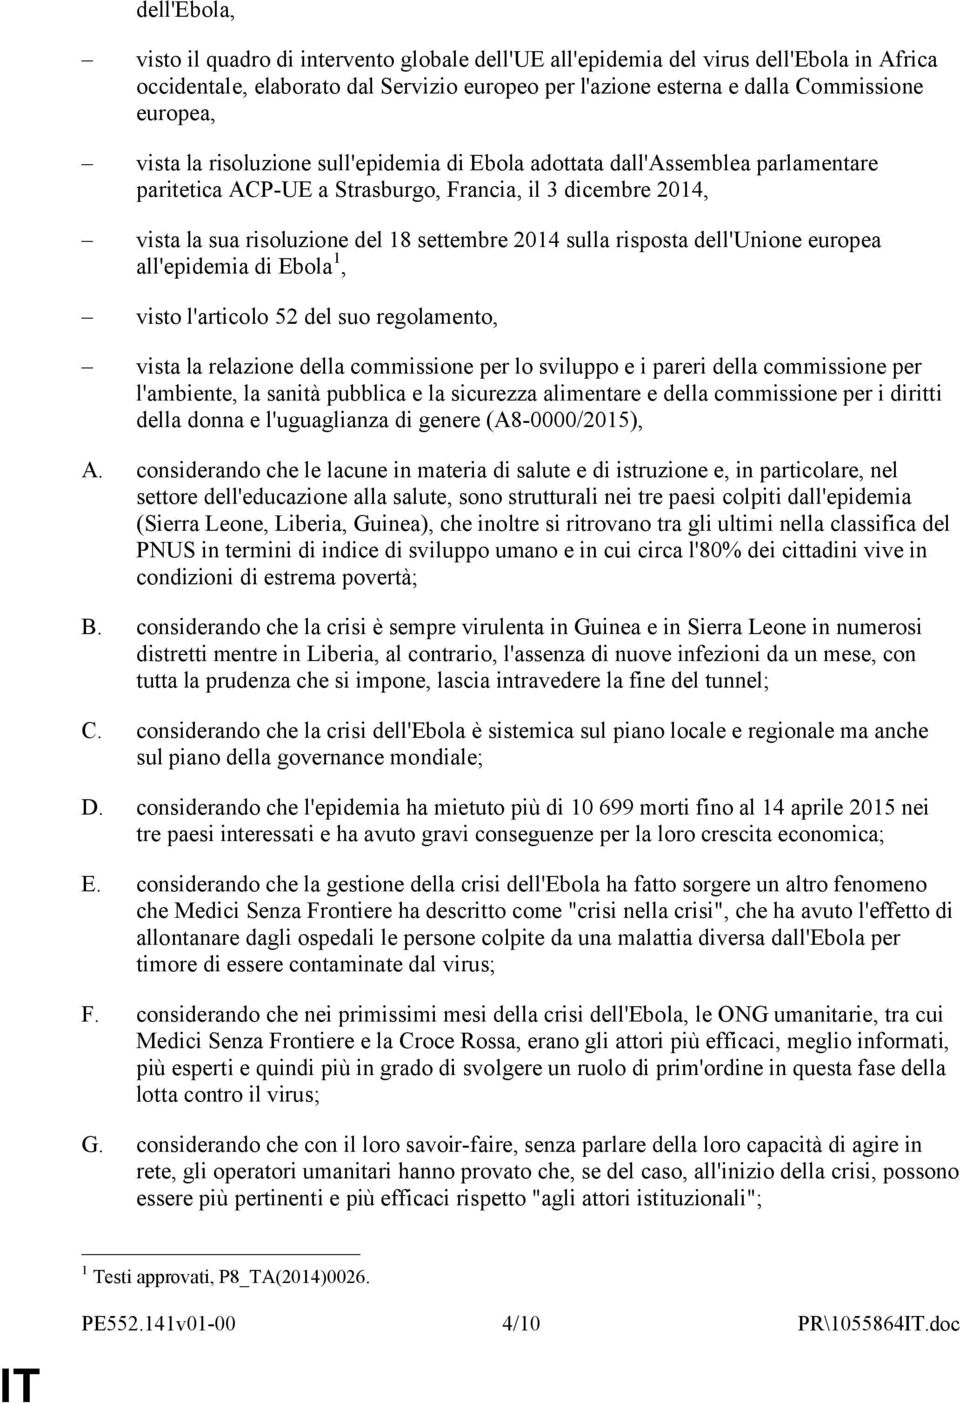 risposta dell'unione europea all'epidemia di Ebola 1, visto l'articolo 52 del suo regolamento, vista la relazione della commissione per lo sviluppo e i pareri della commissione per l'ambiente, la